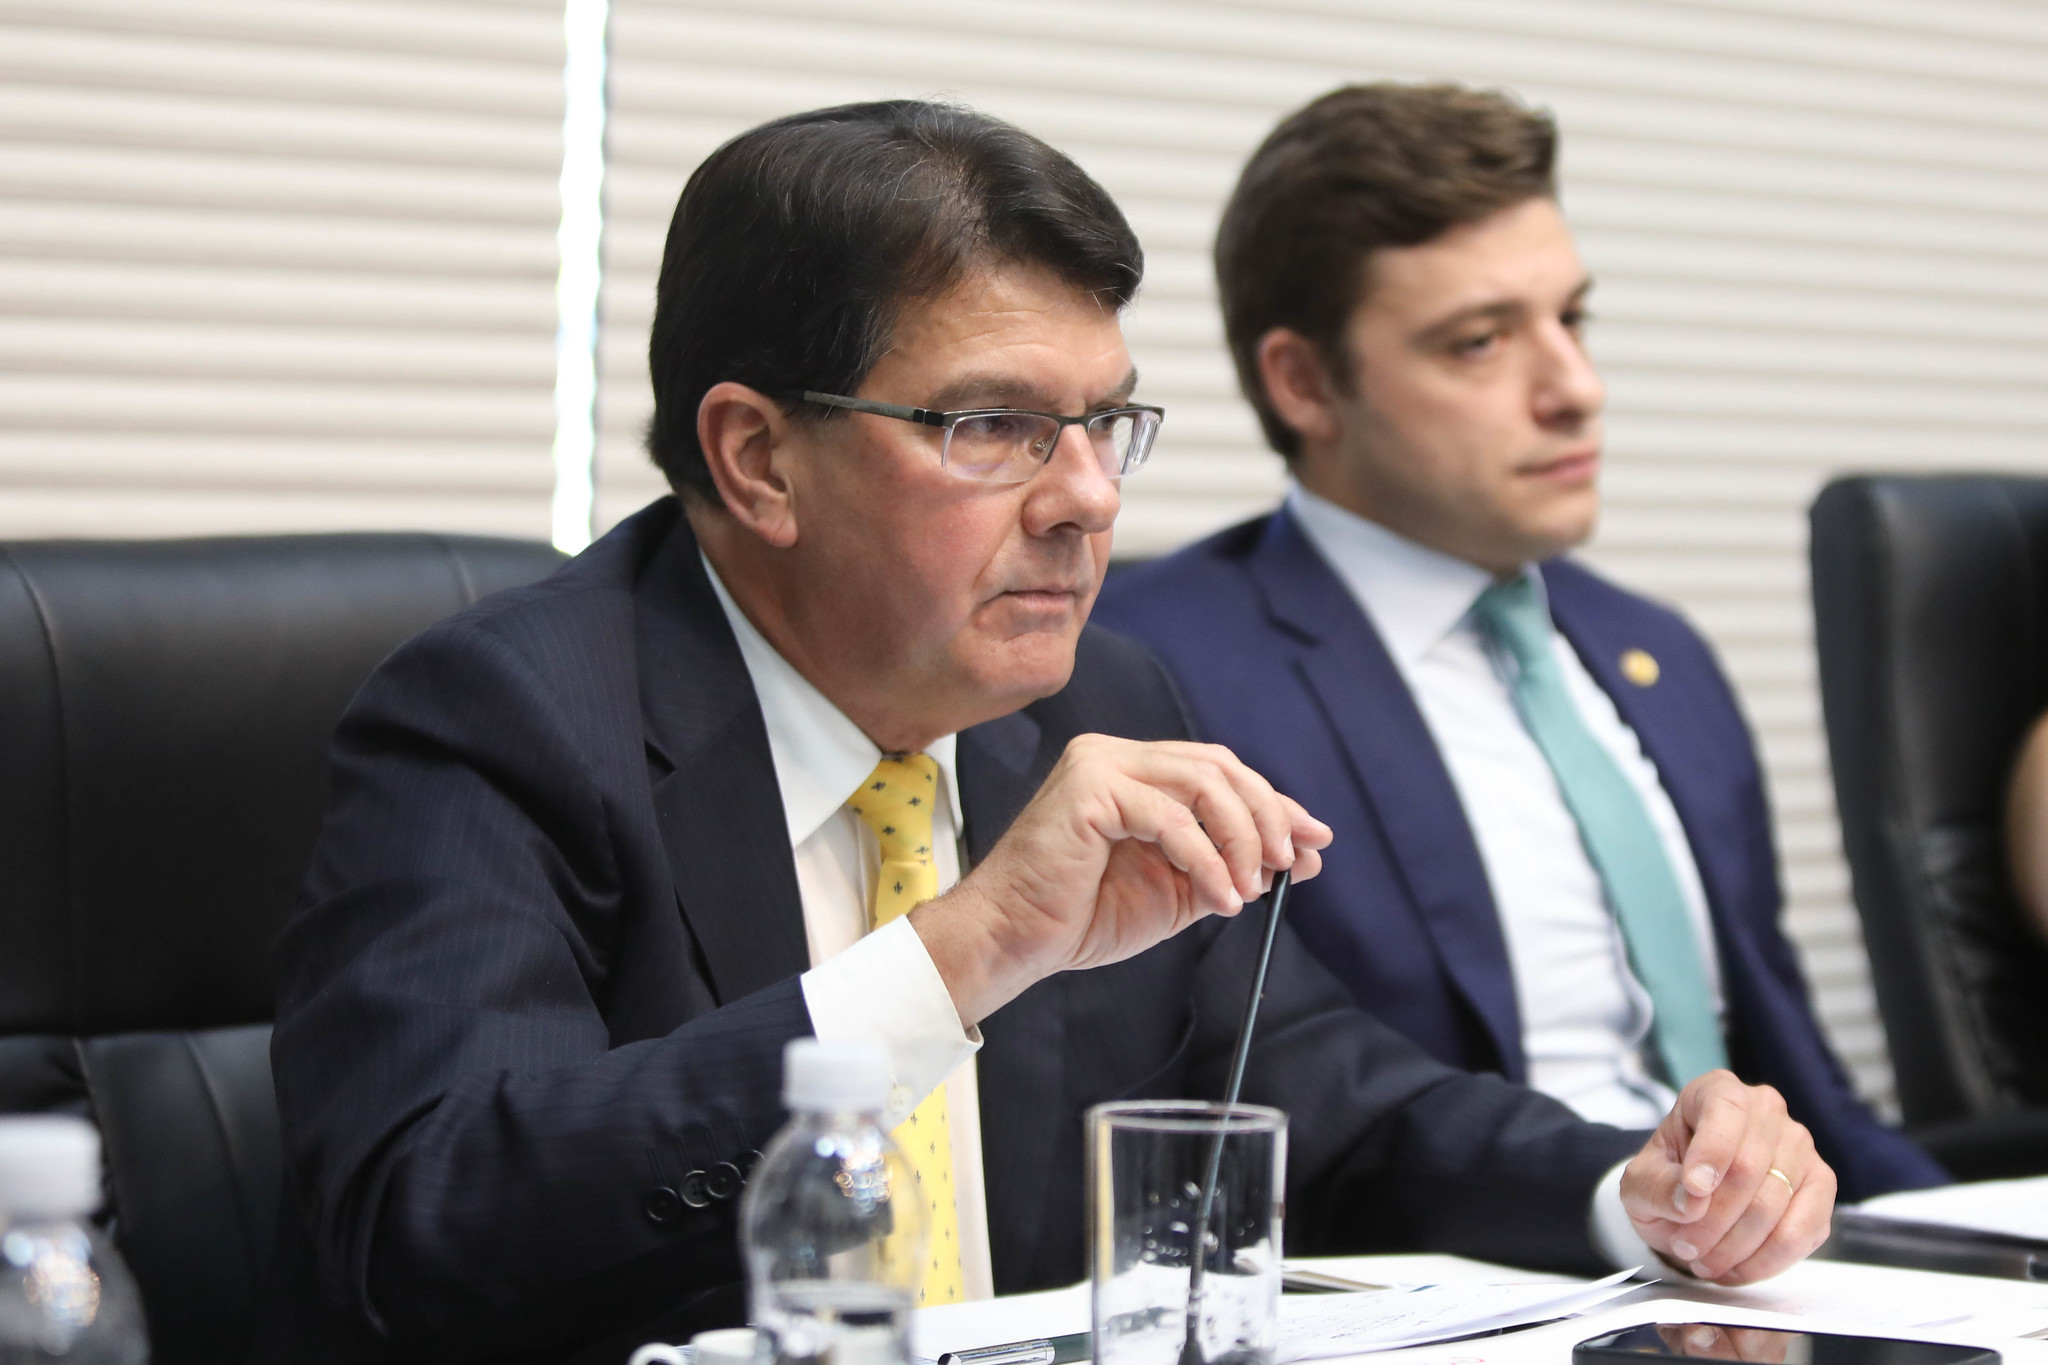 Apagão: CPI ouve presidente da Enel em sessão com quedas de energia